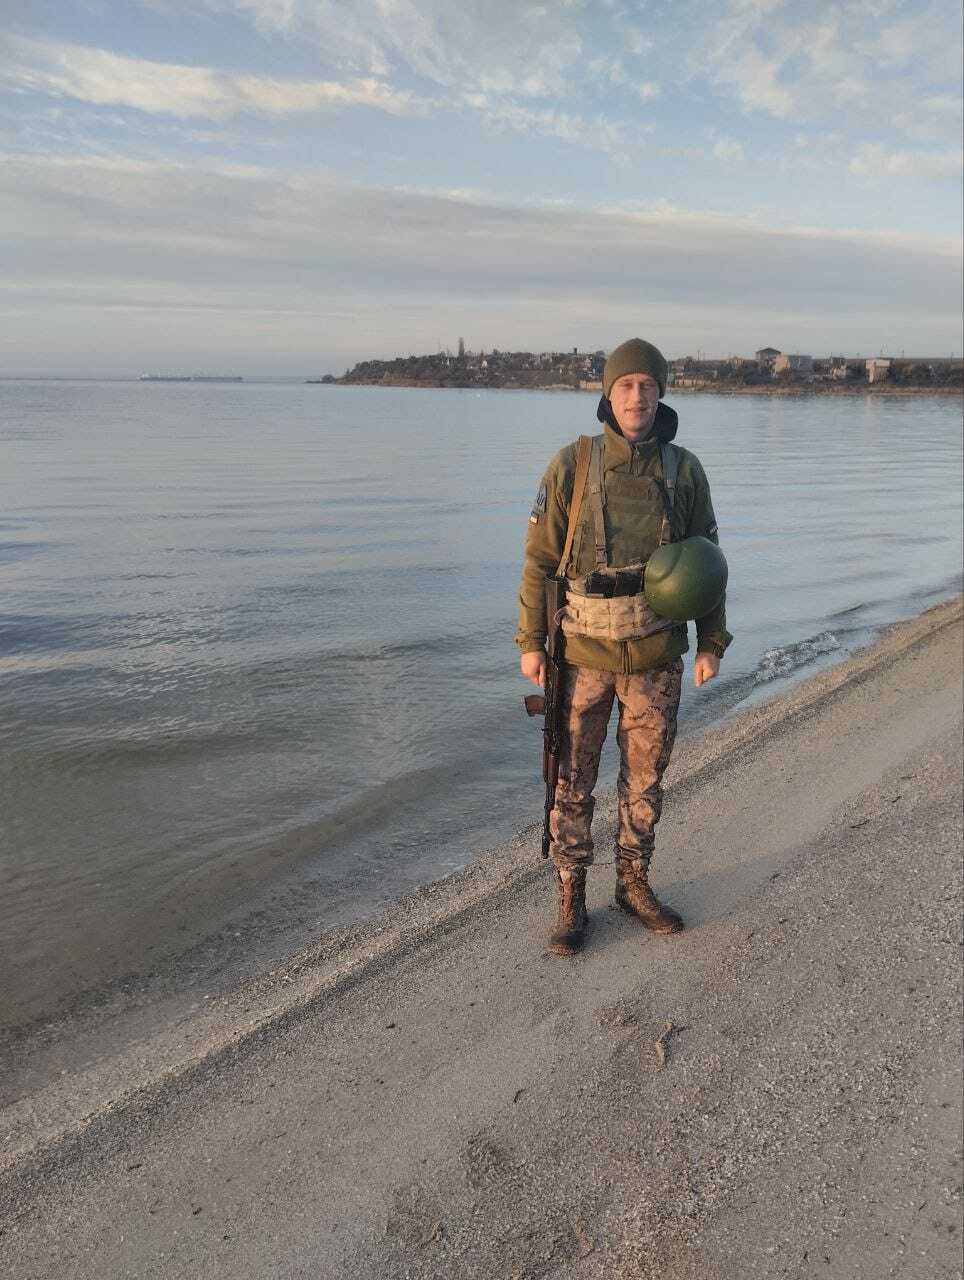 Родные до последнего верили в чудо: в боях за Украину погиб молодой защитник из Одесской области. Фото